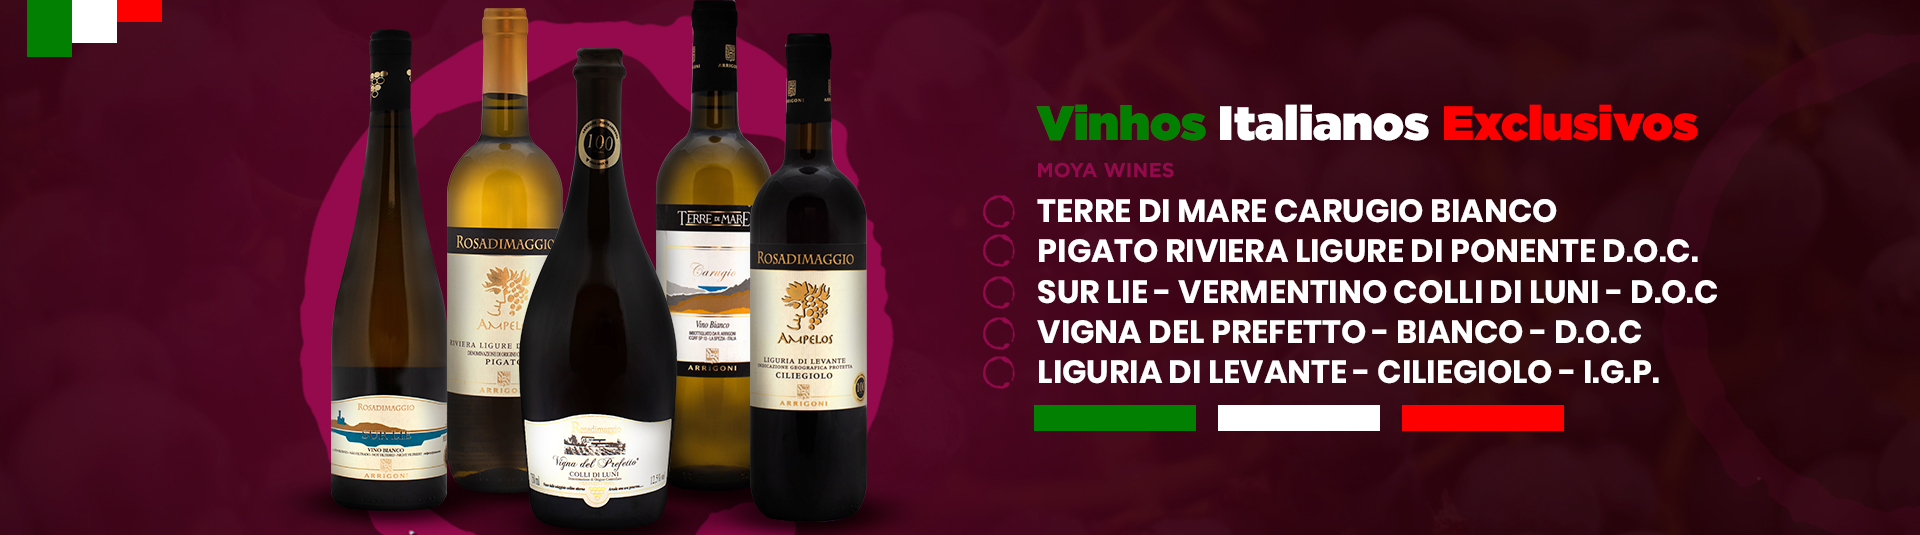 Vinhos Italianos Exclusivos